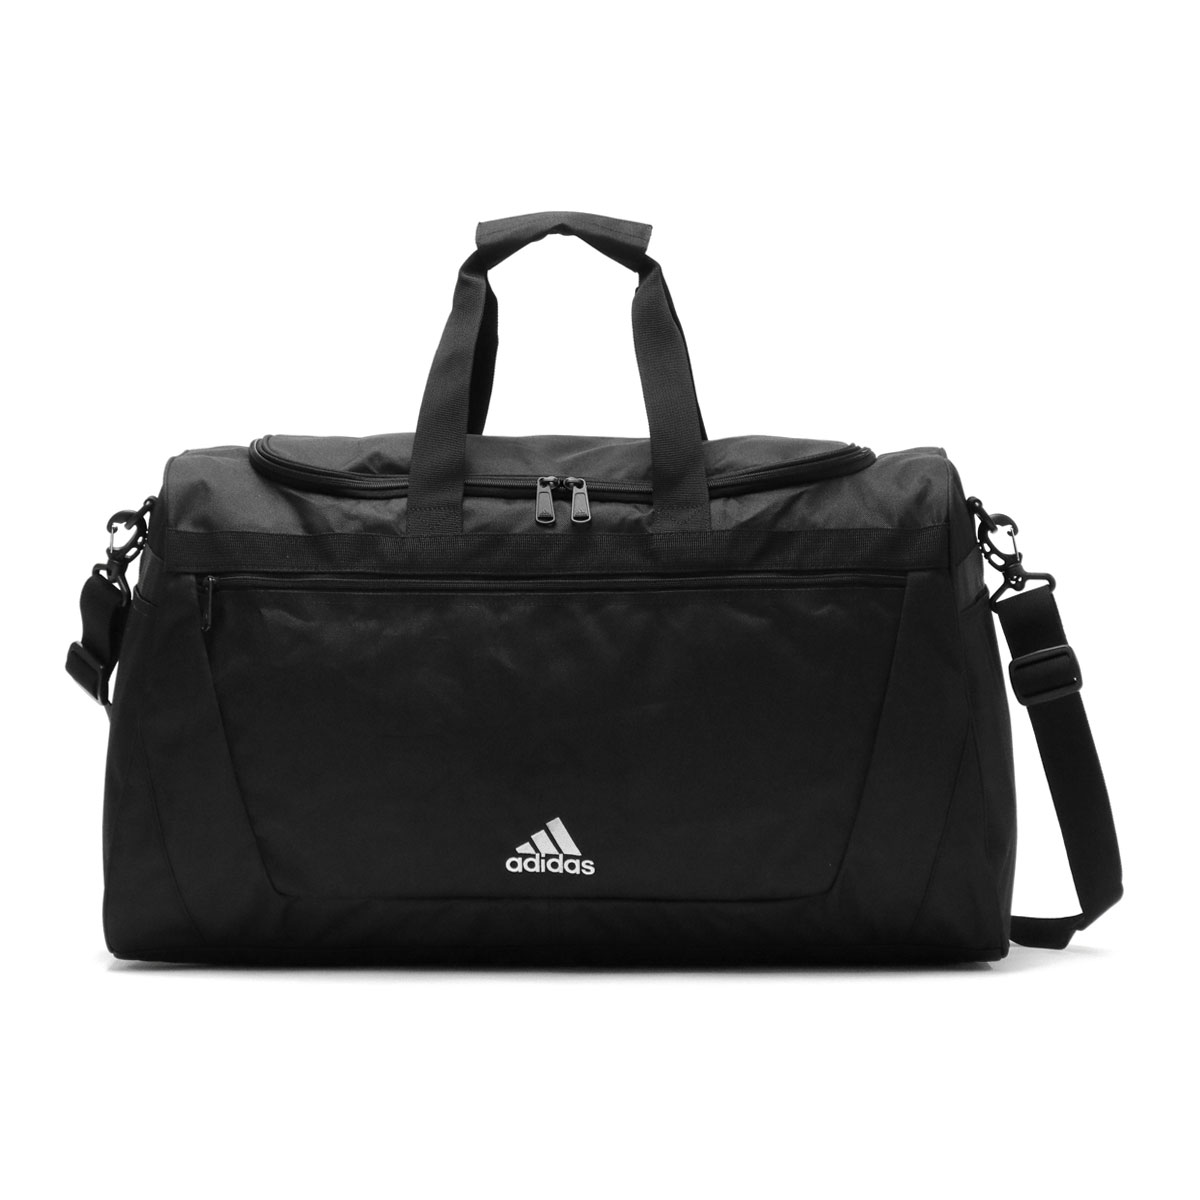  максимальный 38%*5/23 ограничение Adidas сумка "Boston bag" мужской женский .. путешествие большая вместимость путешествие adidas большая спортивная сумка легкий 2WAY бренд 55L A3 4.63606